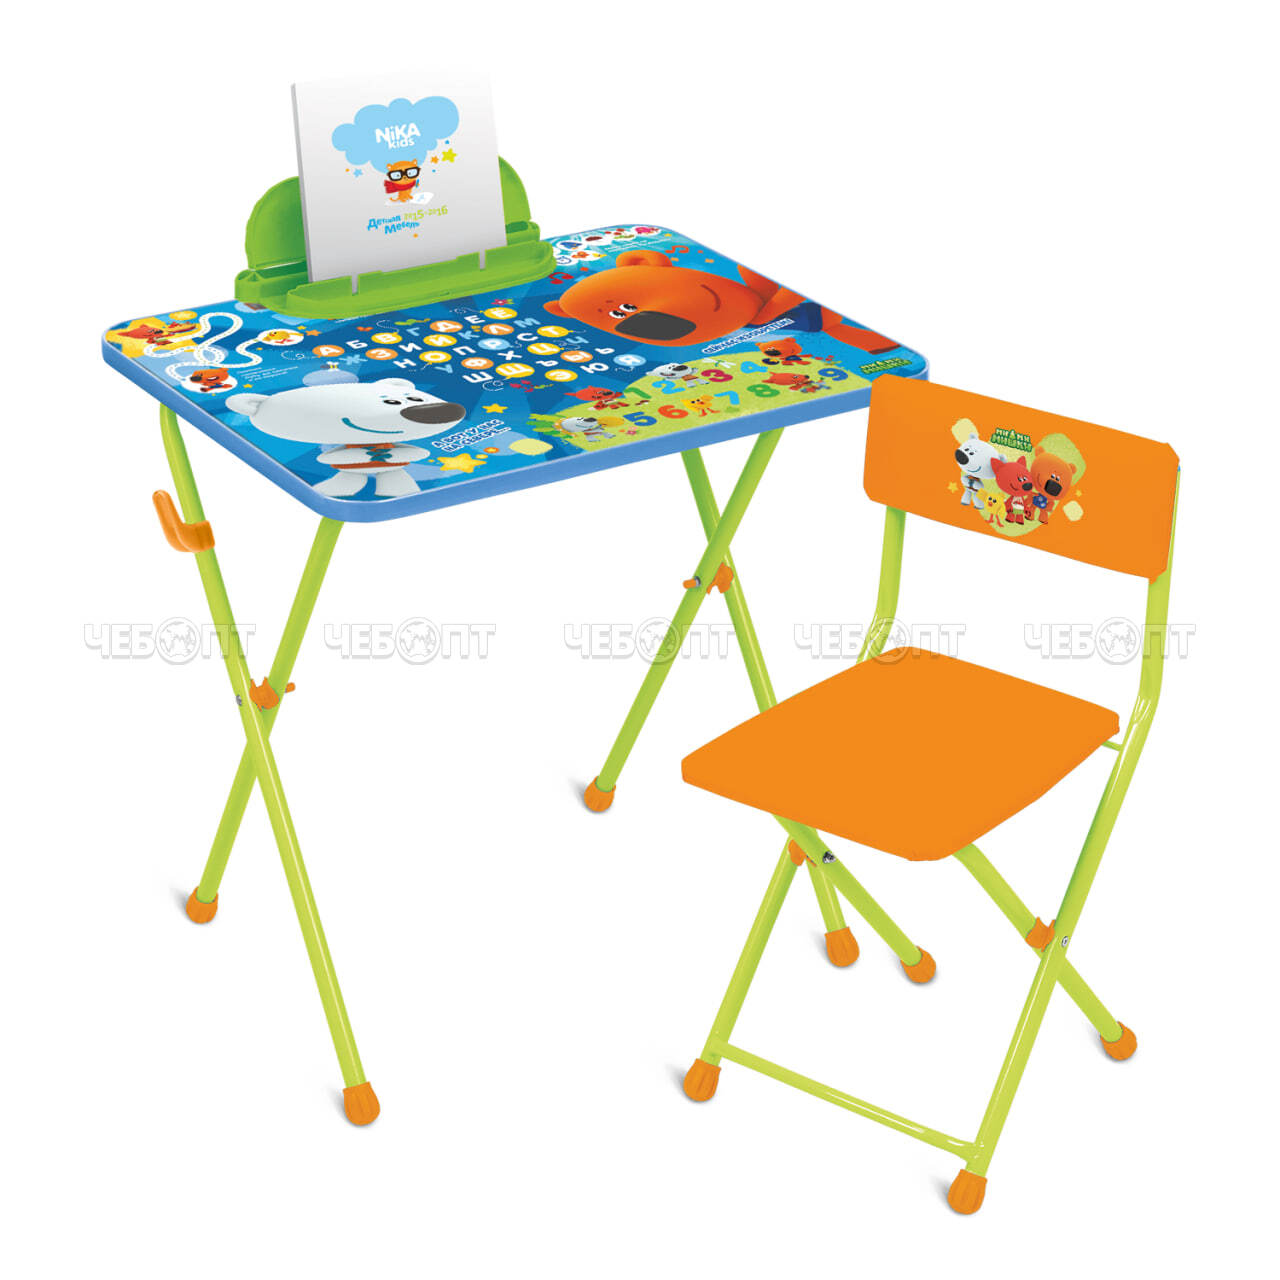 Комплект детской мебели "Ми-ми-мишки" стол 60*45*52 см с пеналом с подст. для книг + стул мягкий возраст 1,5 -3 года арт. ММ1/1, ММ1/2 [1] NIKA. ЧЕБОПТ.